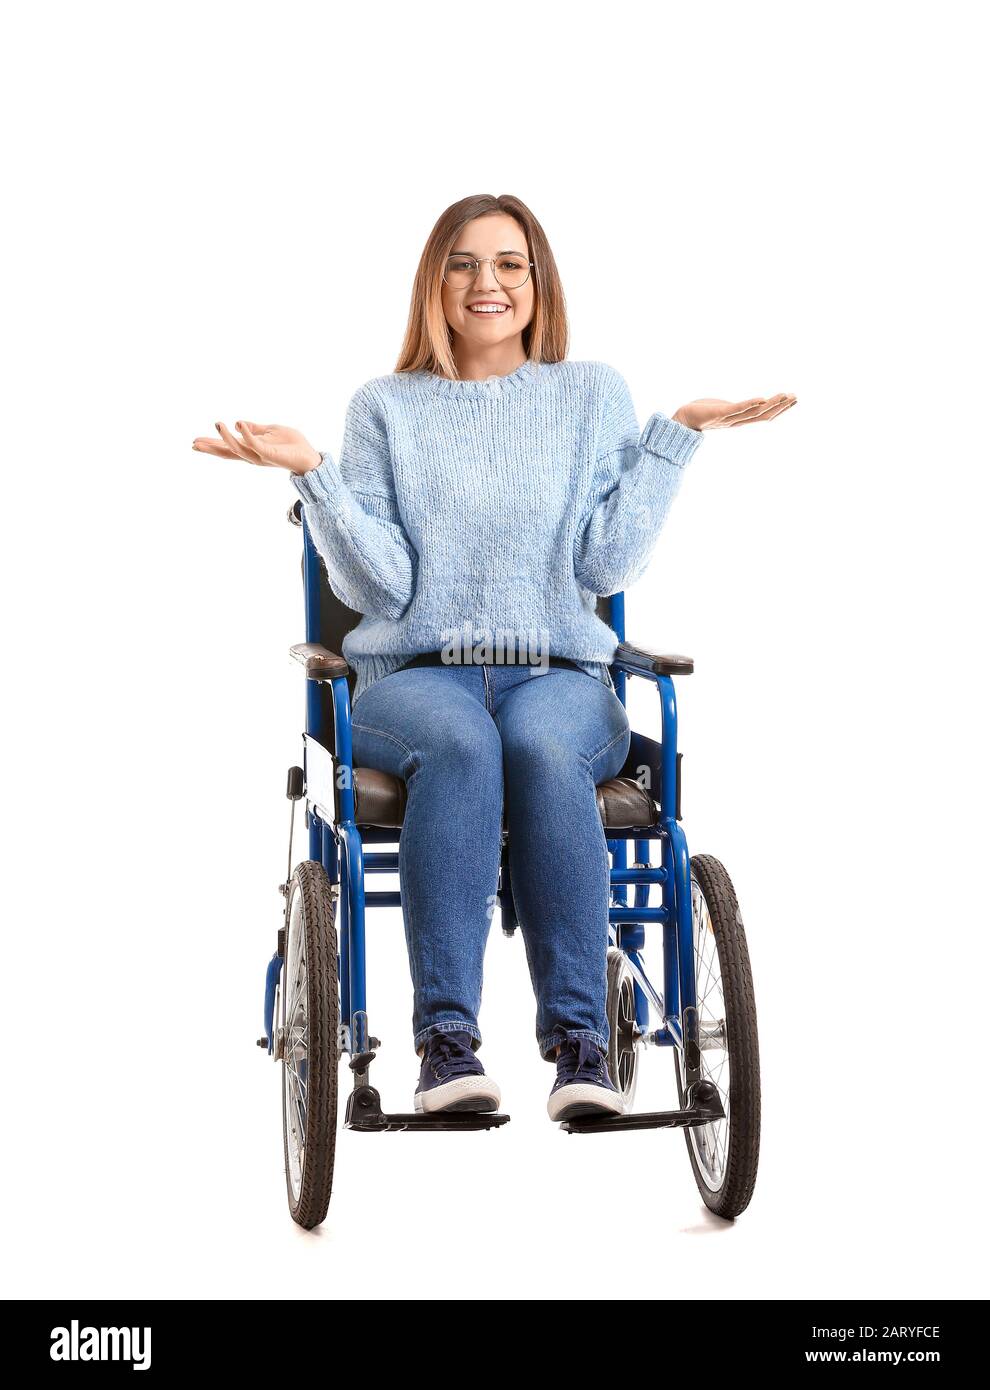 Jeune femme handicapé en fauteuil roulant sur fond blanc Photo Stock - Alamy